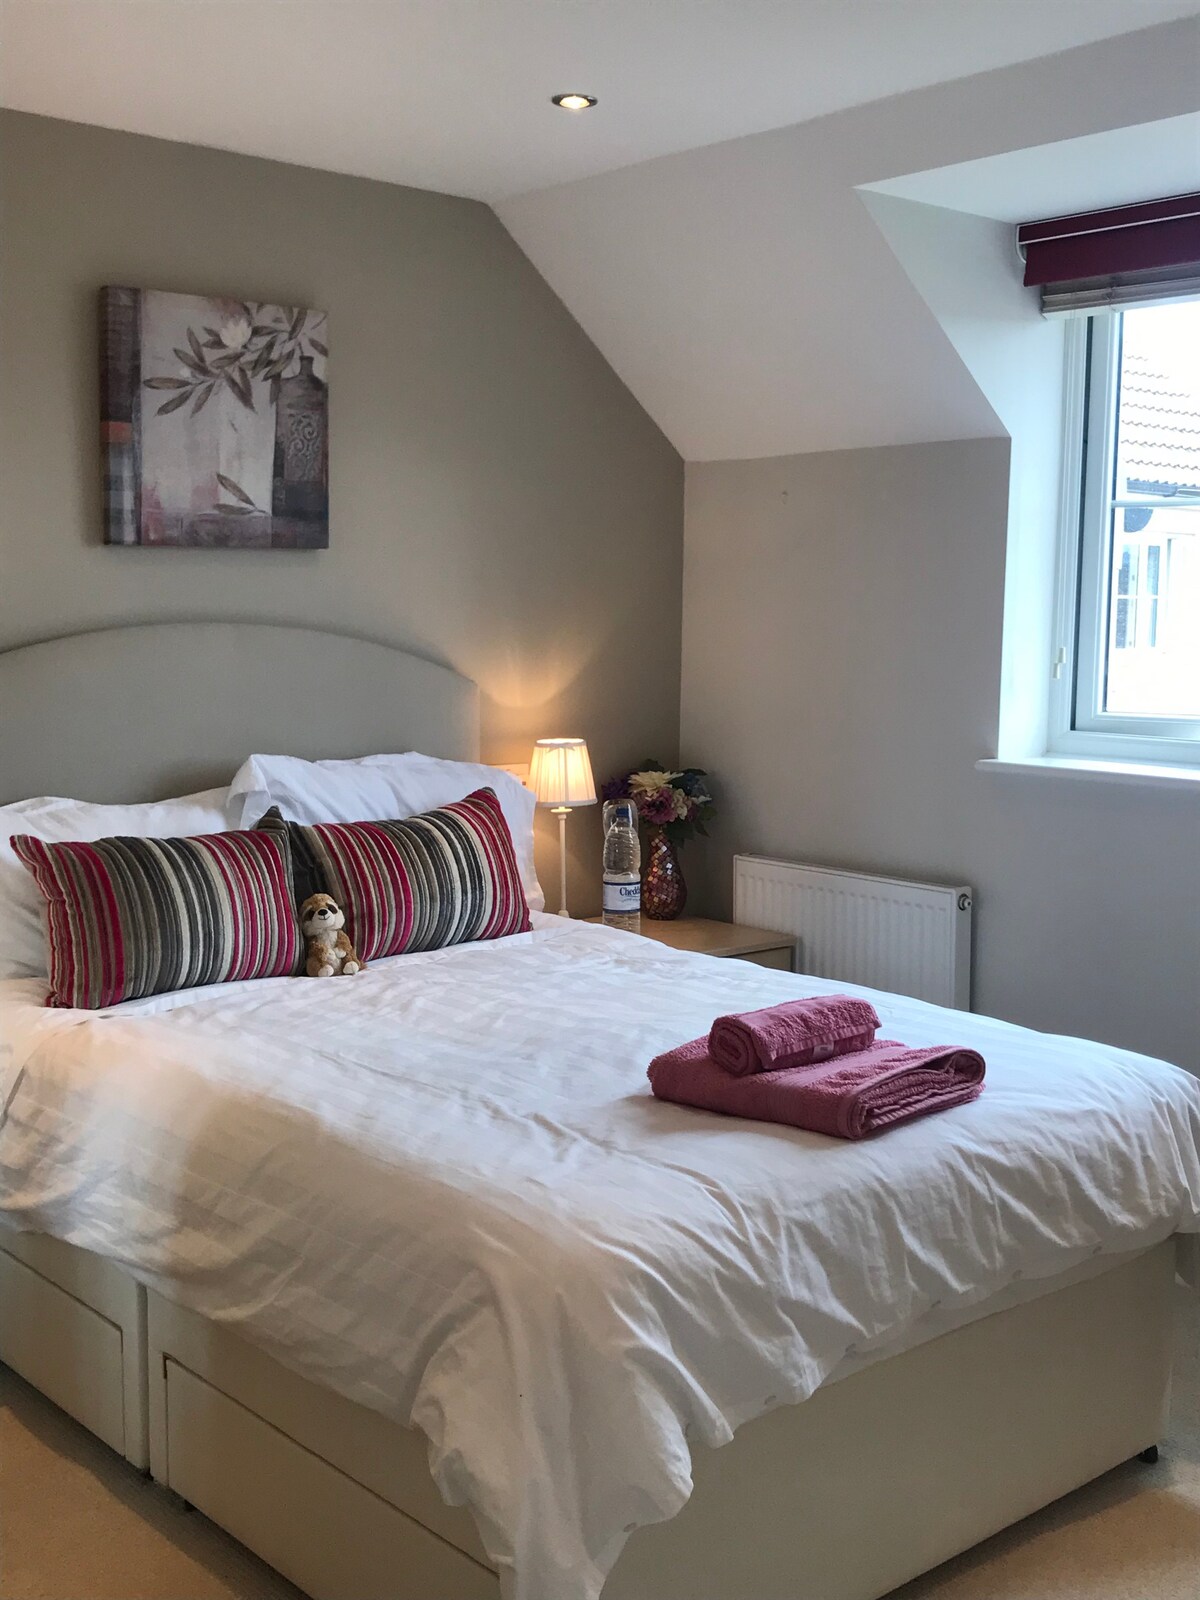 2 bedroom luxury flat in the heart of Wells